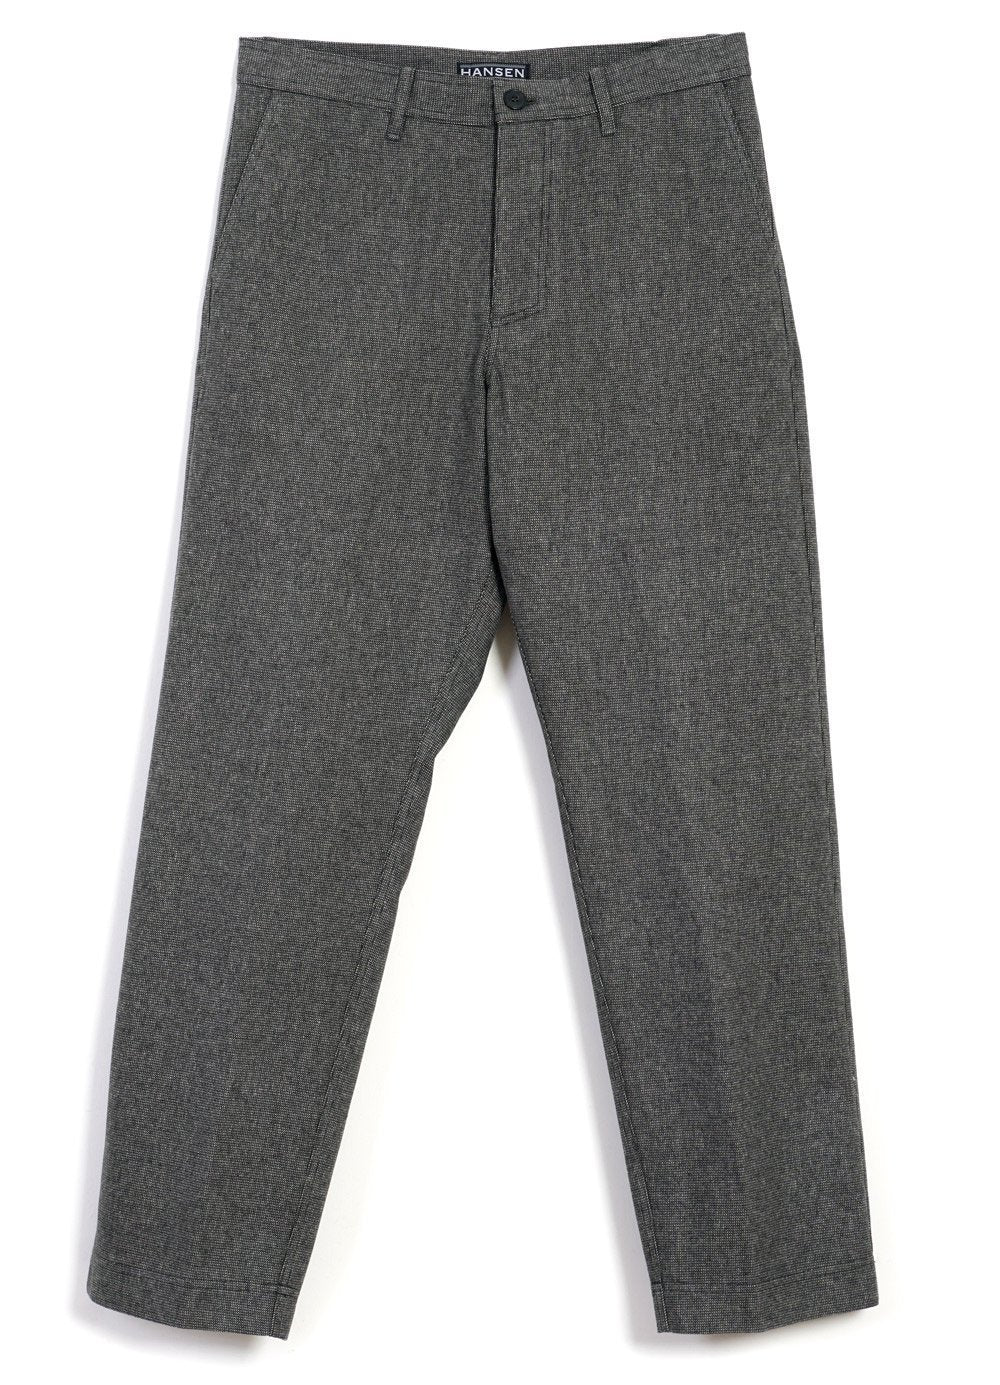 HANSEN Garments - KEN | Wide Cut Trousers | Gravel - HANSEN Garments